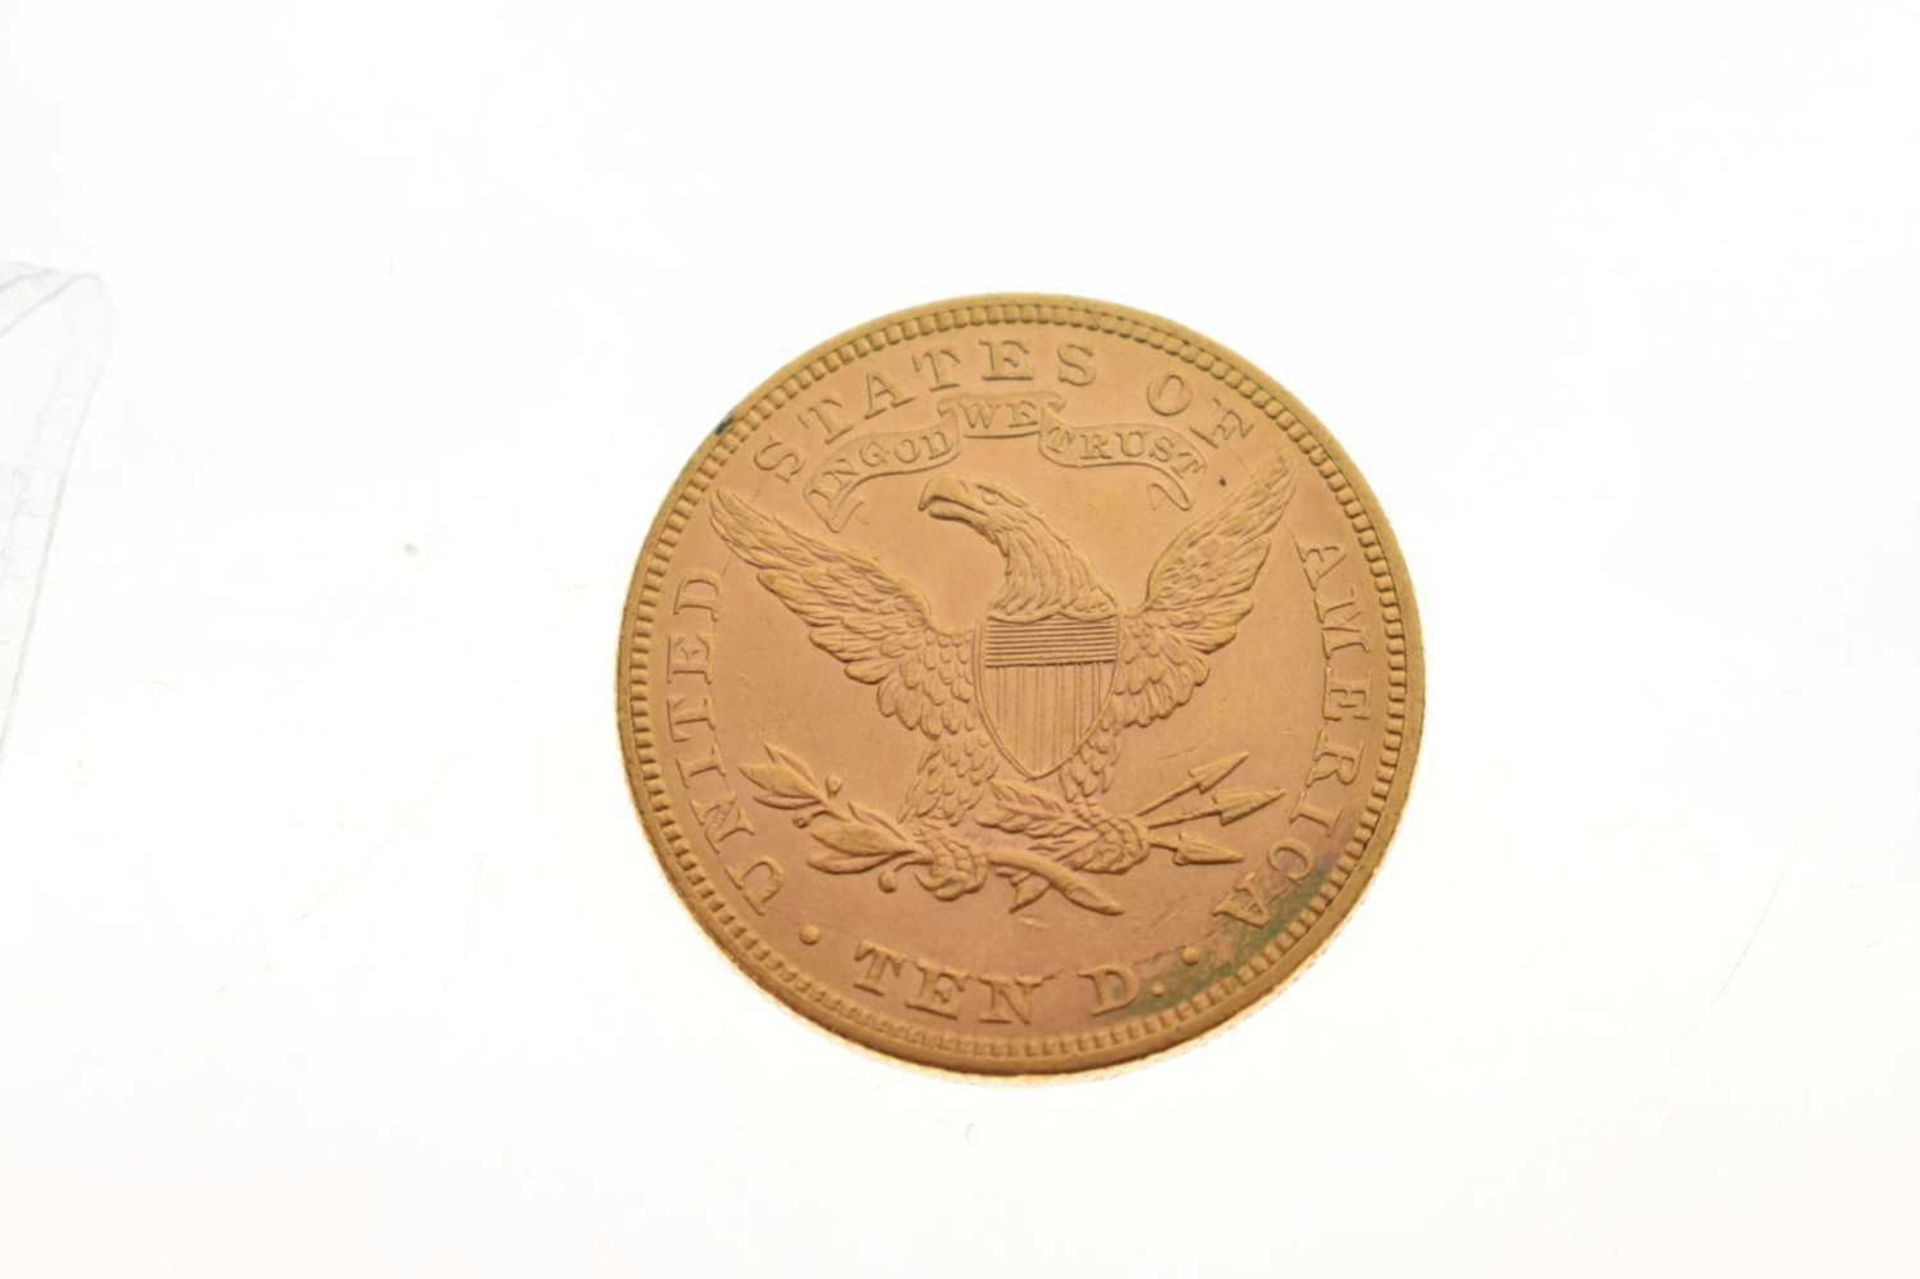 USA ten dollar gold coin, liberty head, 1893 - Image 3 of 5